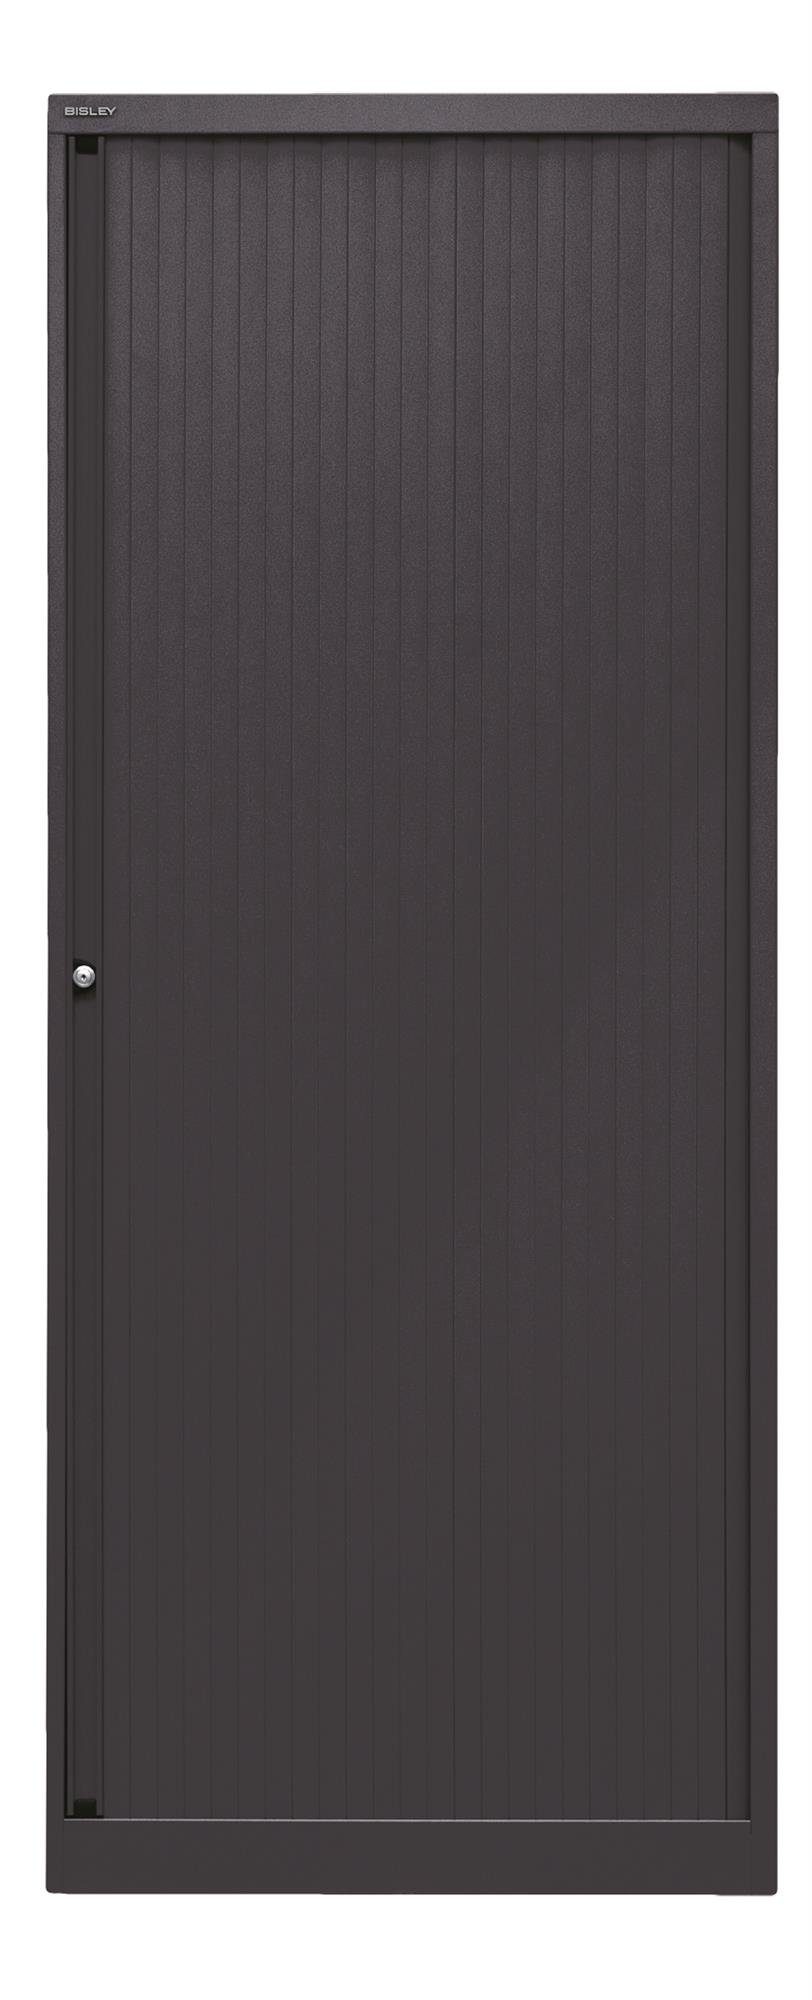 Korpus 5633 schwarz, EUROTAMBOUR Rollladenschrank schwarz Bisley Rollladen